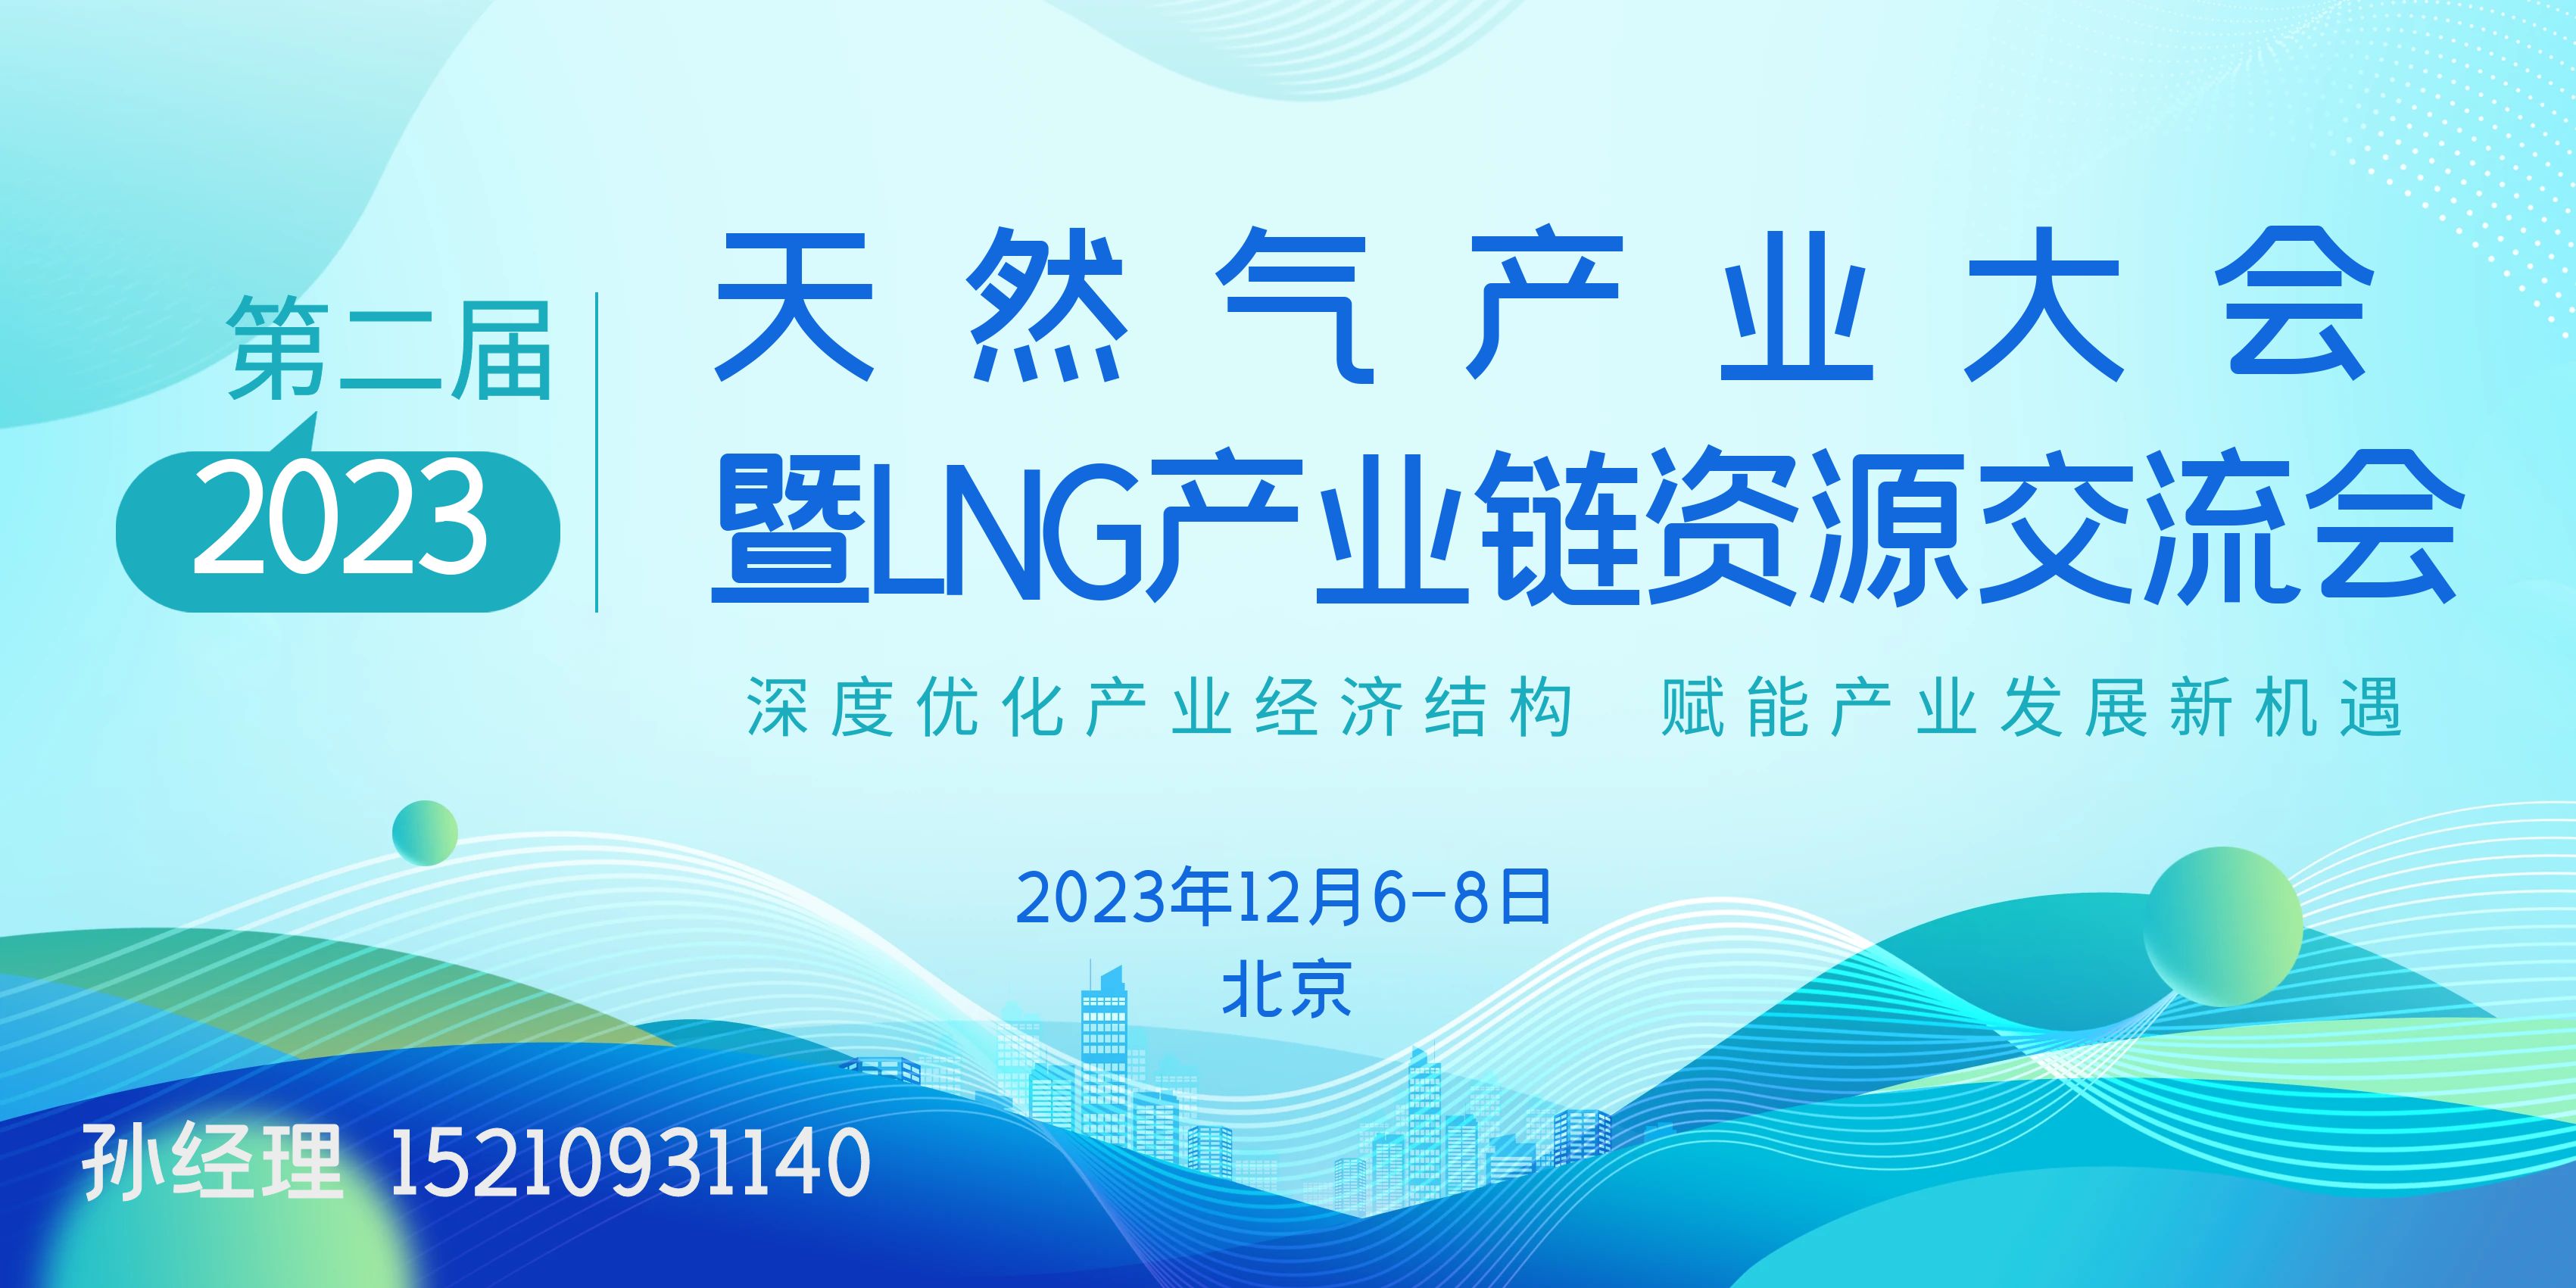 2023第二届天然气产业大会|暨LNG产业链资源交流会